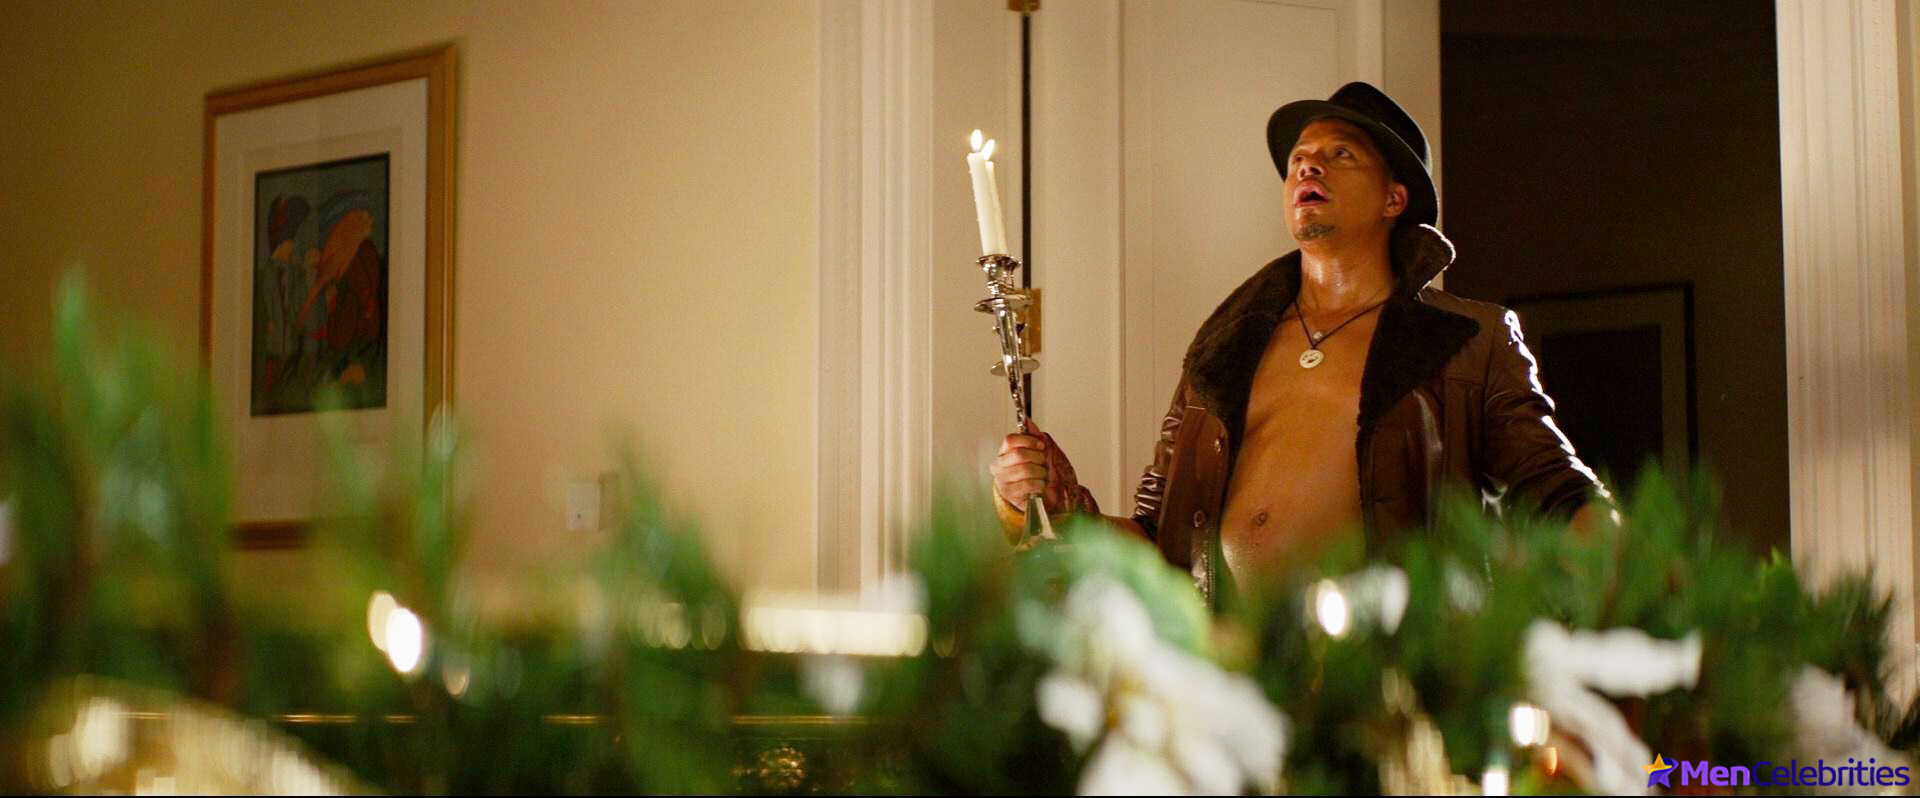 Terrence Howard nude penis movie scenes.